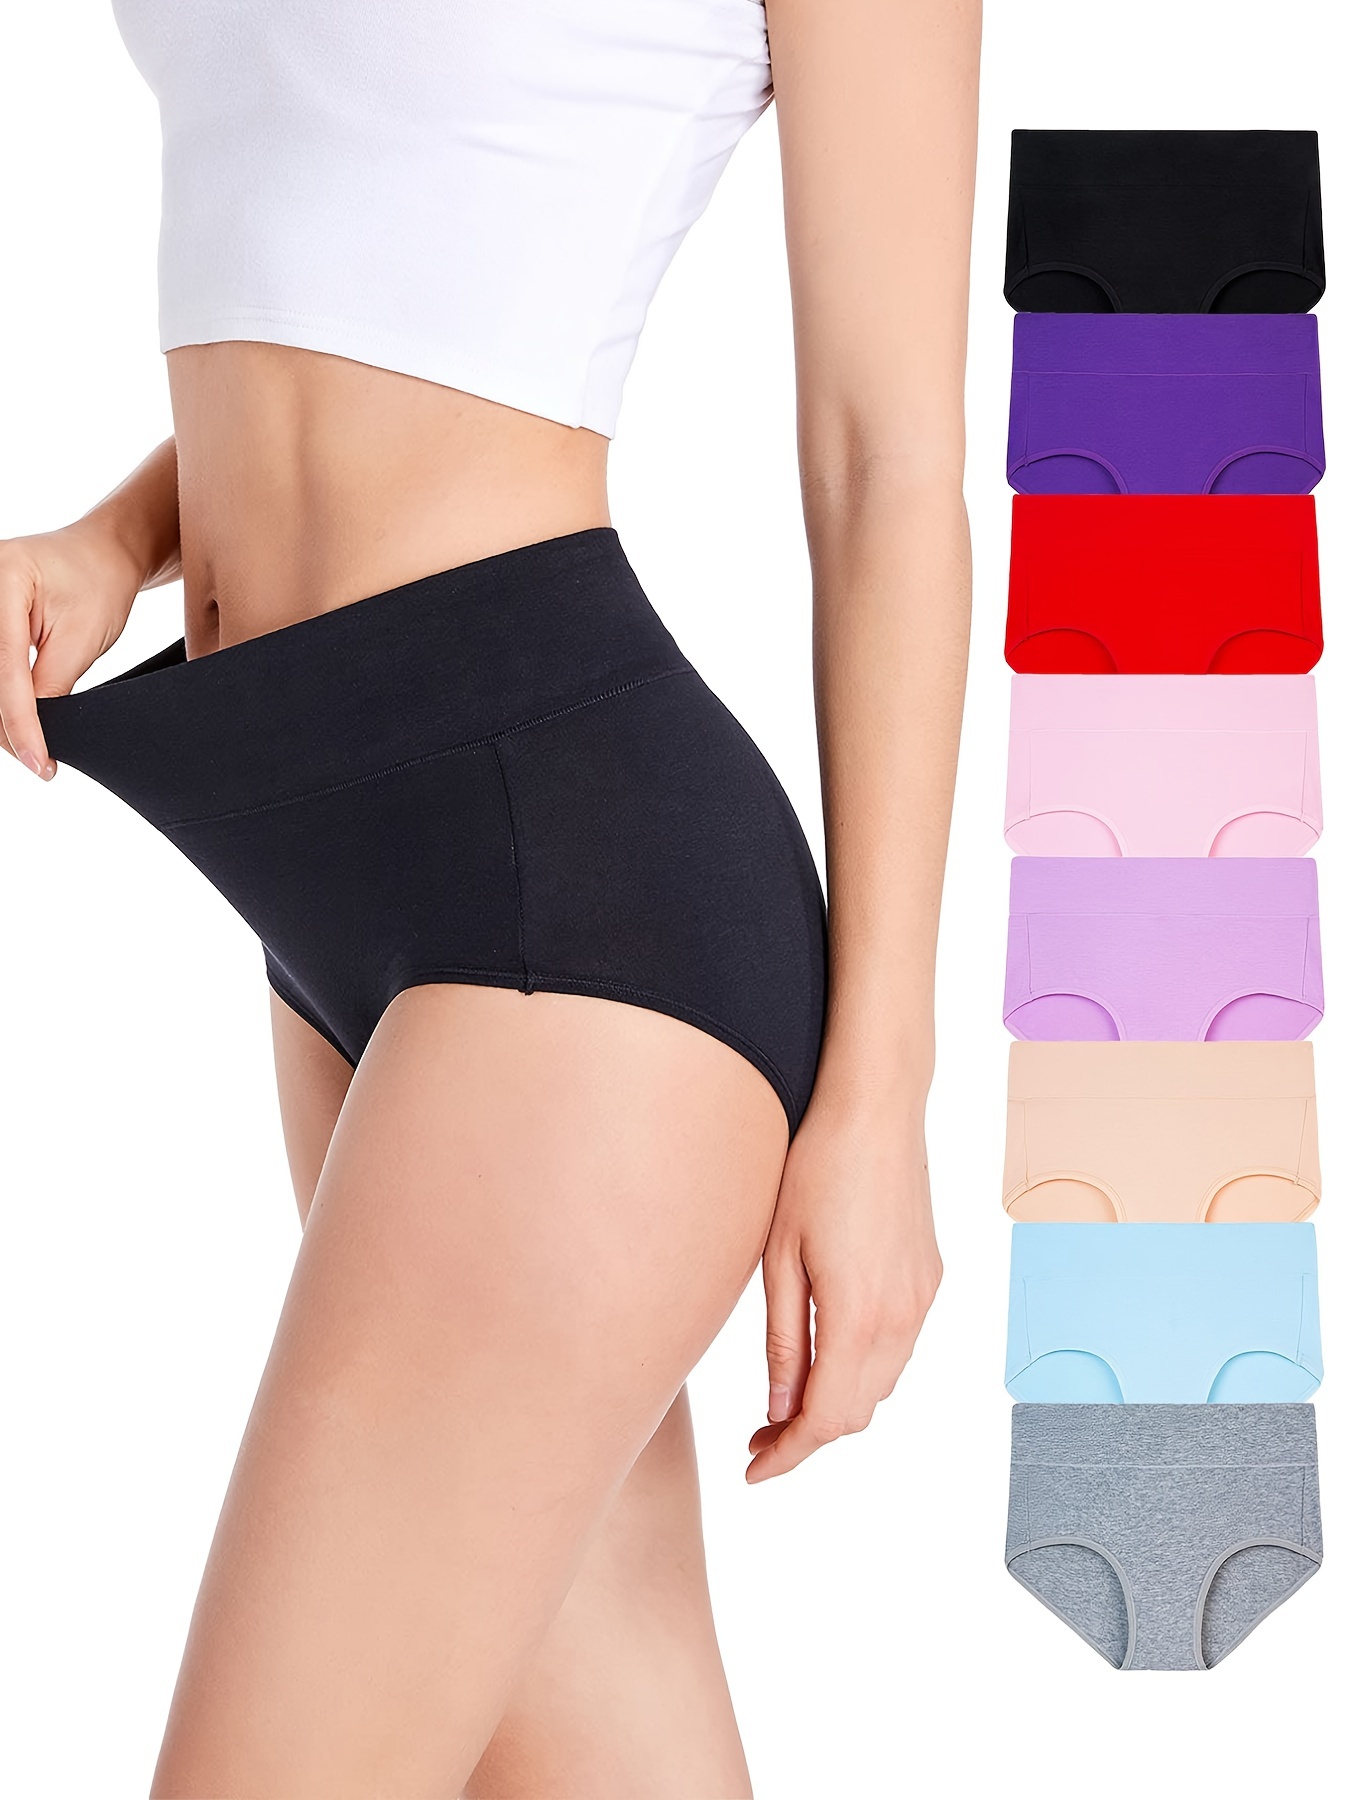 Panties Seamless Cotton Underwear For Women Women Underwear Cotton